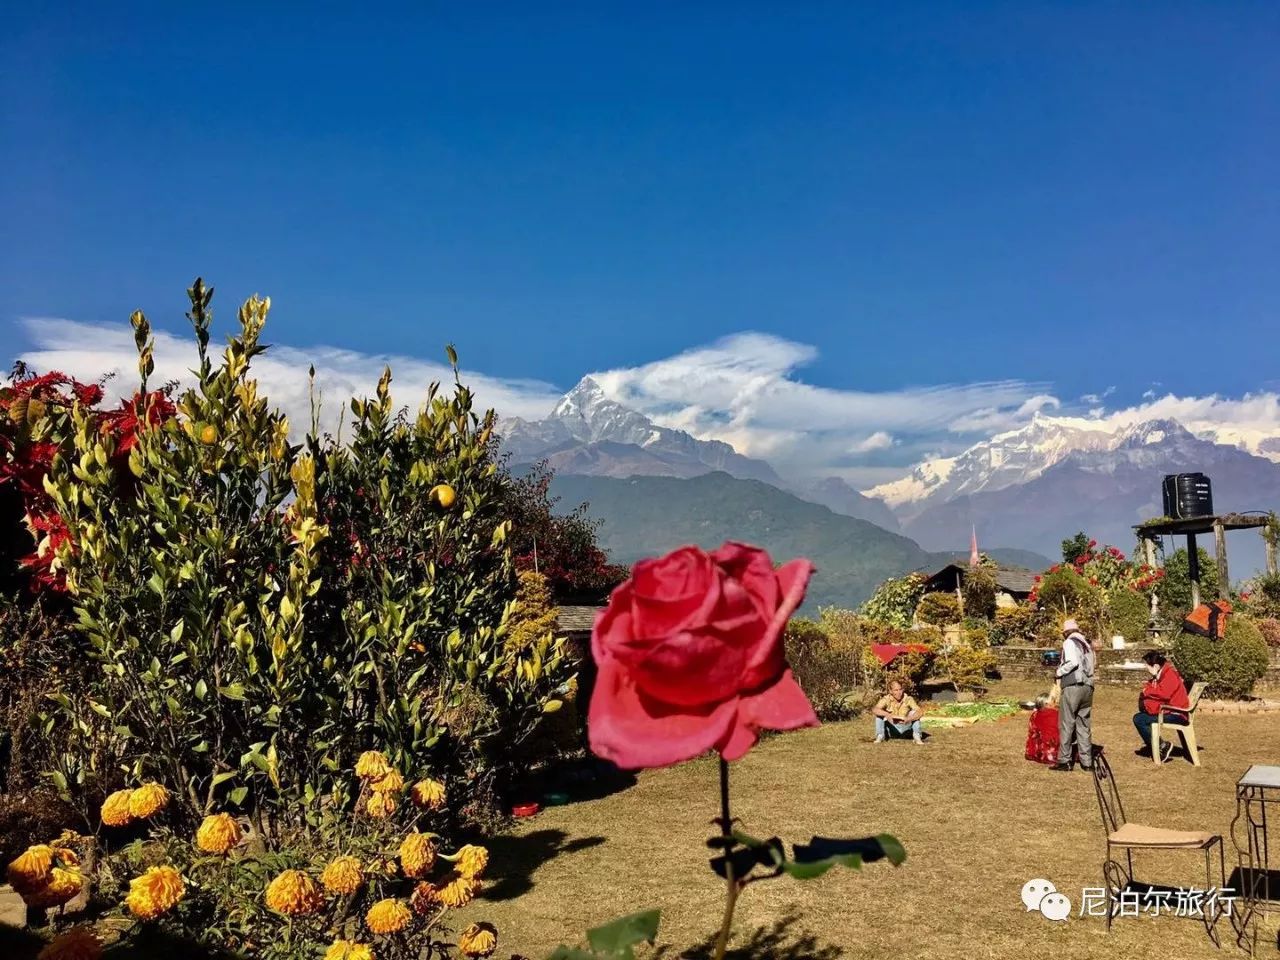 如果你来尼泊尔,千万不要错过雪山小村